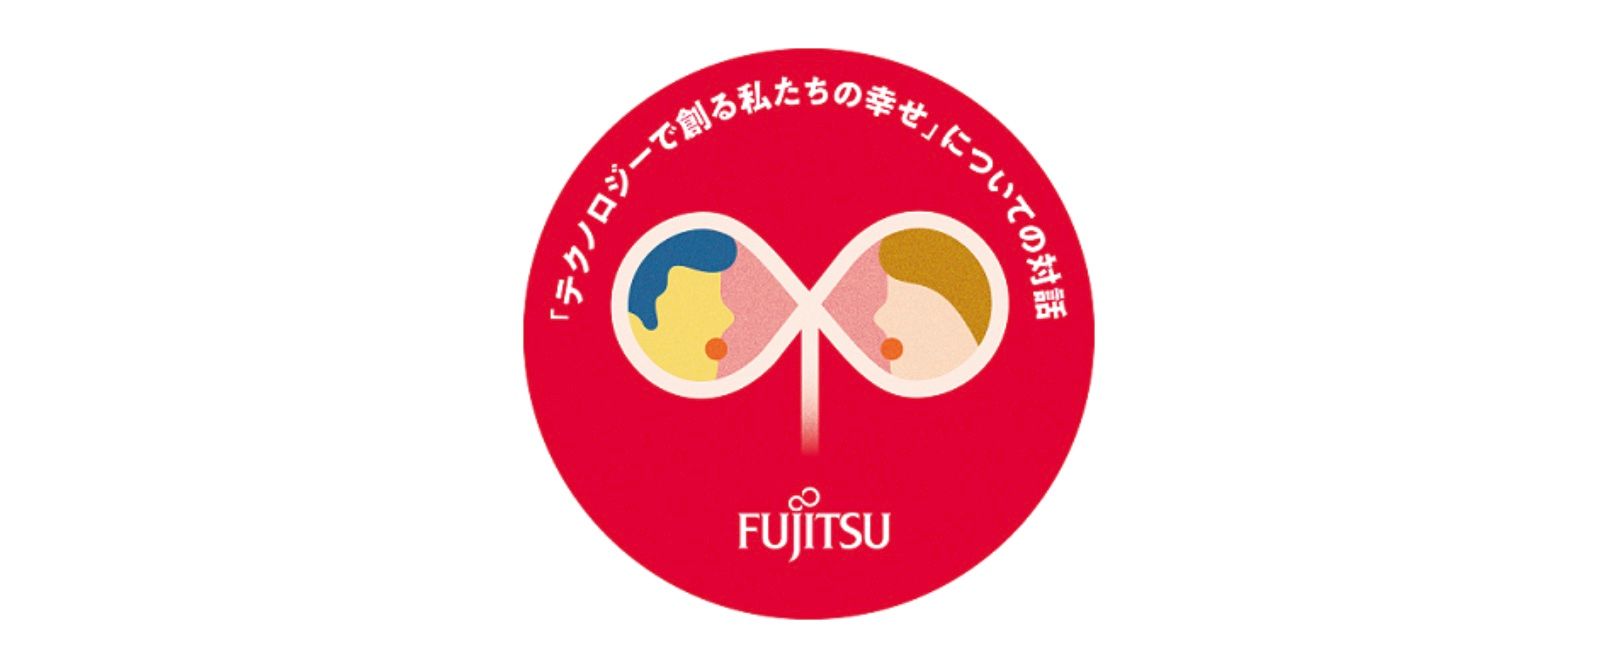 फुजित्सु जापान में सामाजिक कल्याण को बढ़ावा देने के लिए भावी पीढ़ियों की आवाज़ सुनने के लिए गतिविधियों में भाग लेता है